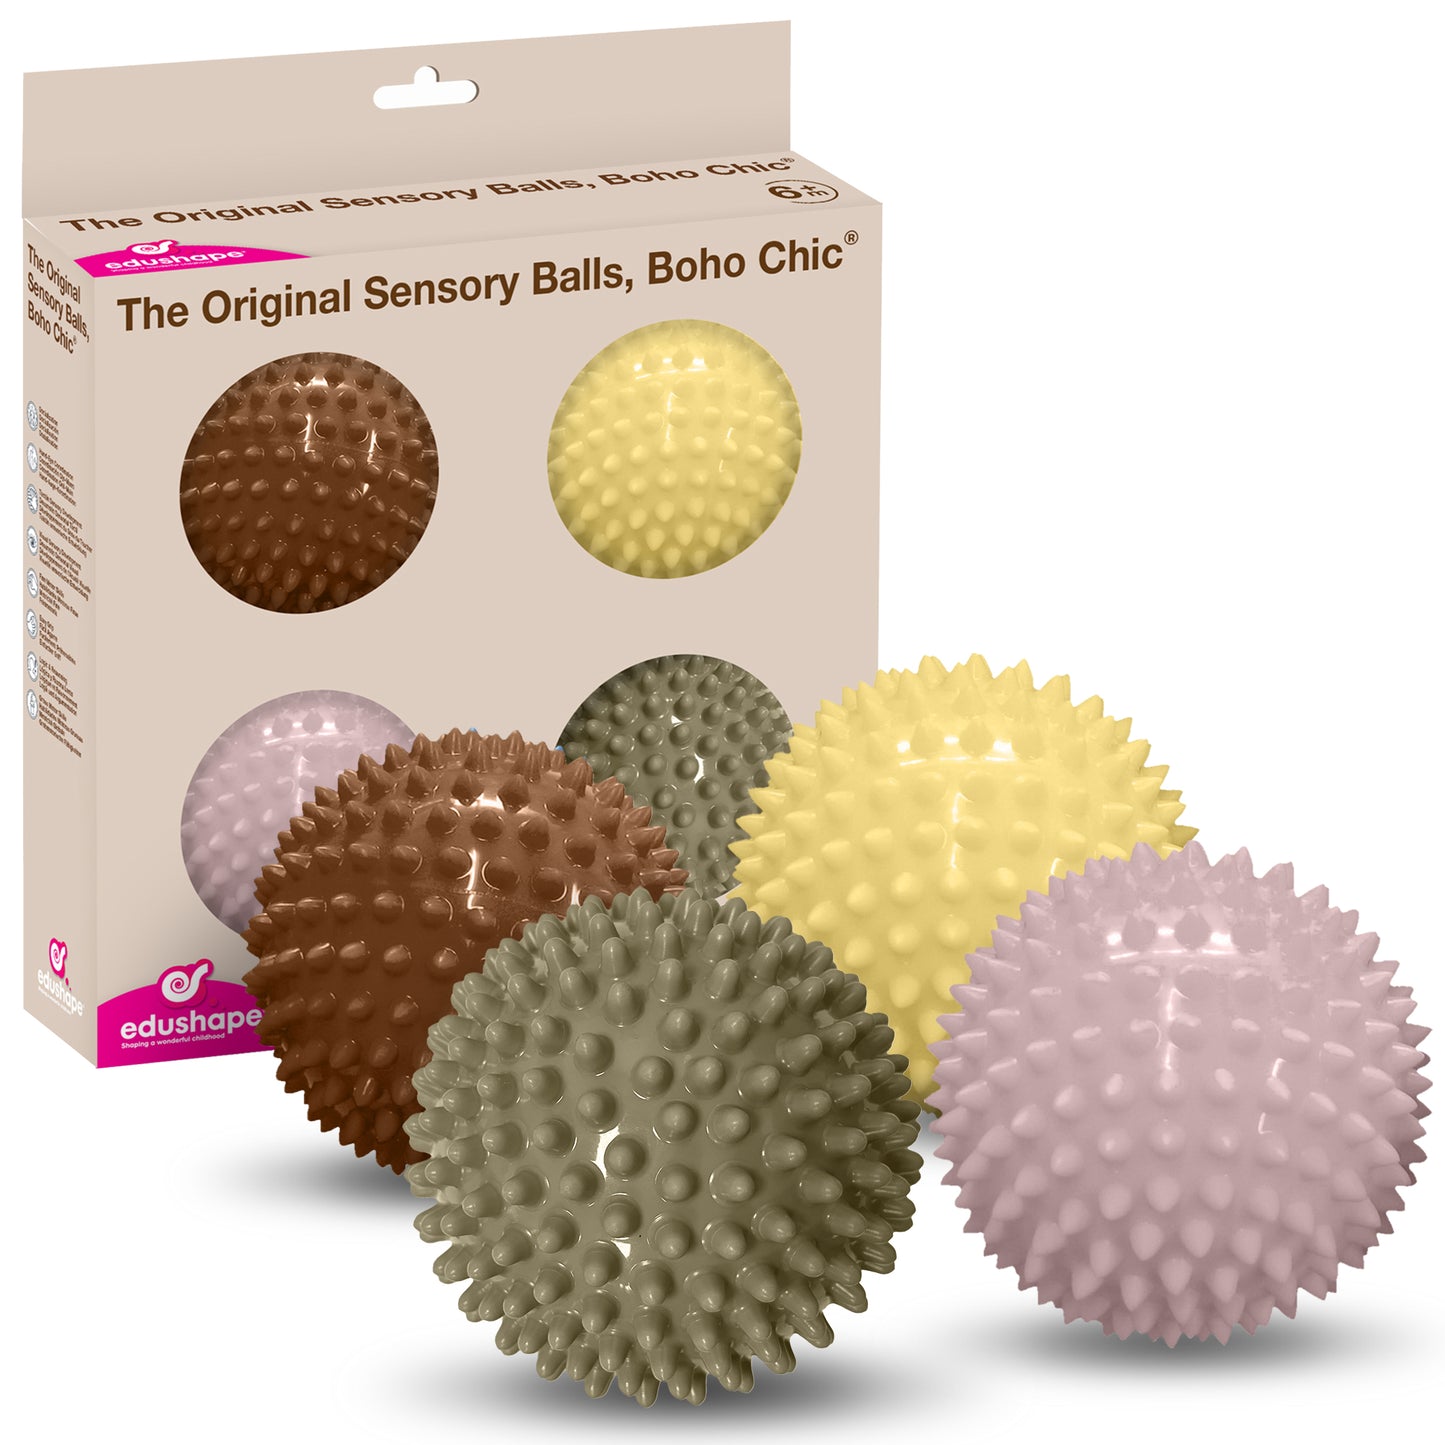 The Original Sensory Balls, Boho Chic